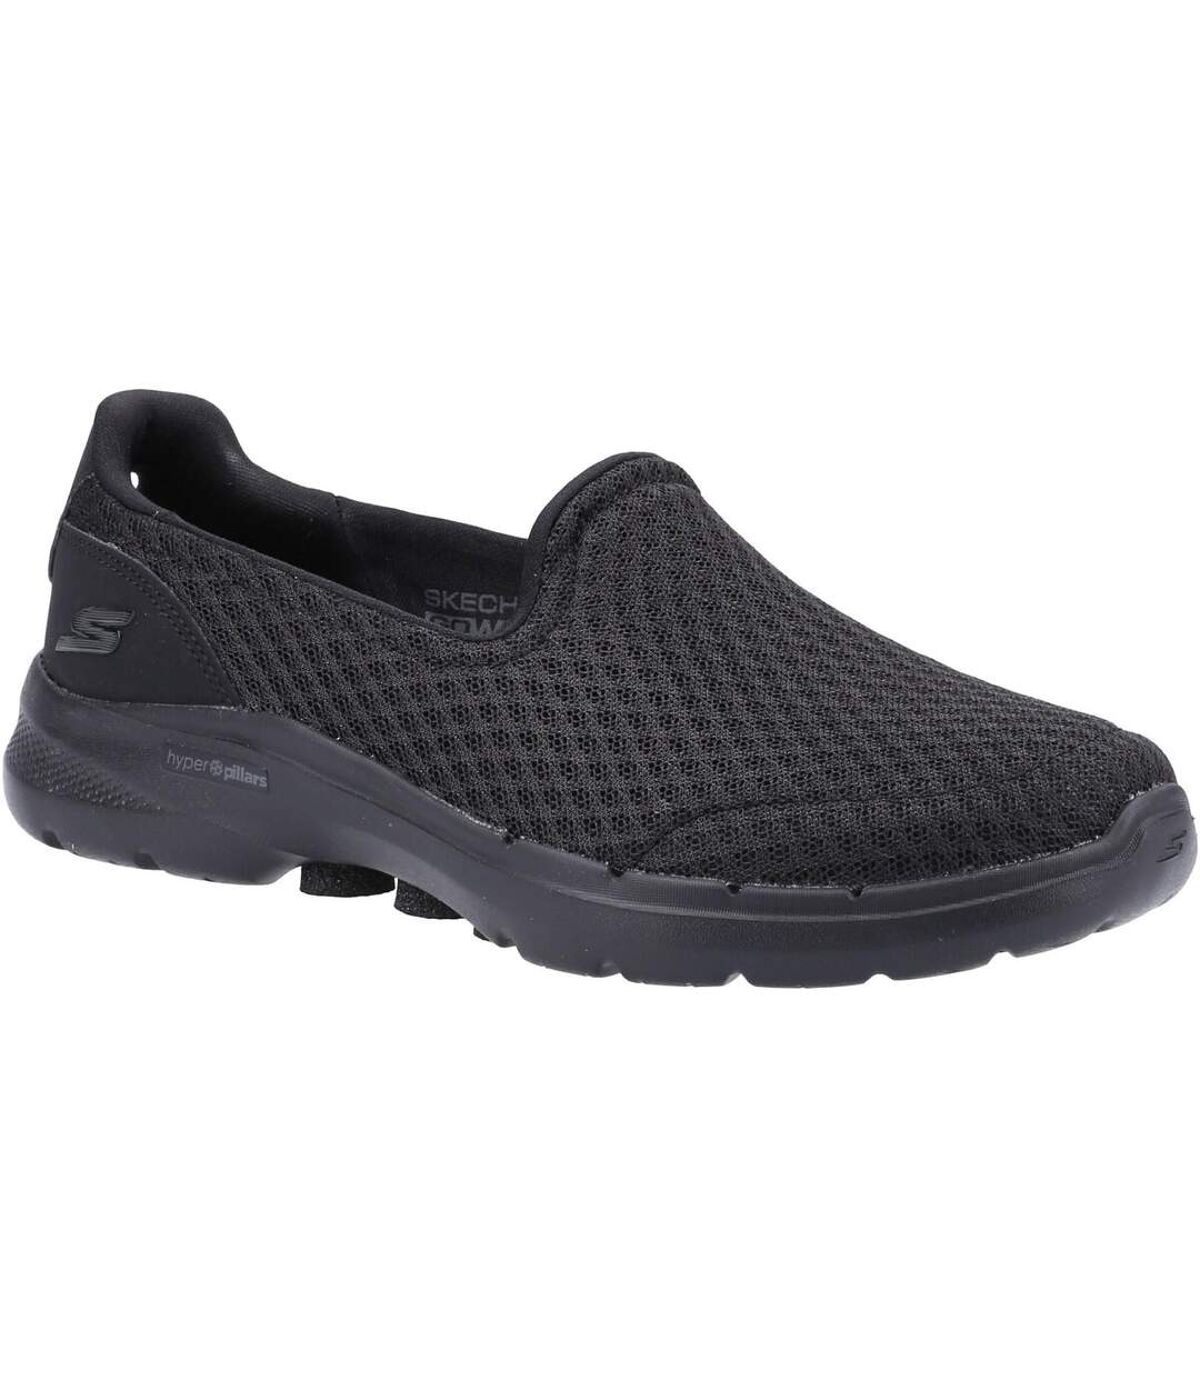 Skechers Womens/Ladies GOwalk 6 Big Splash Walking Shoes (Black) - UTFS8216